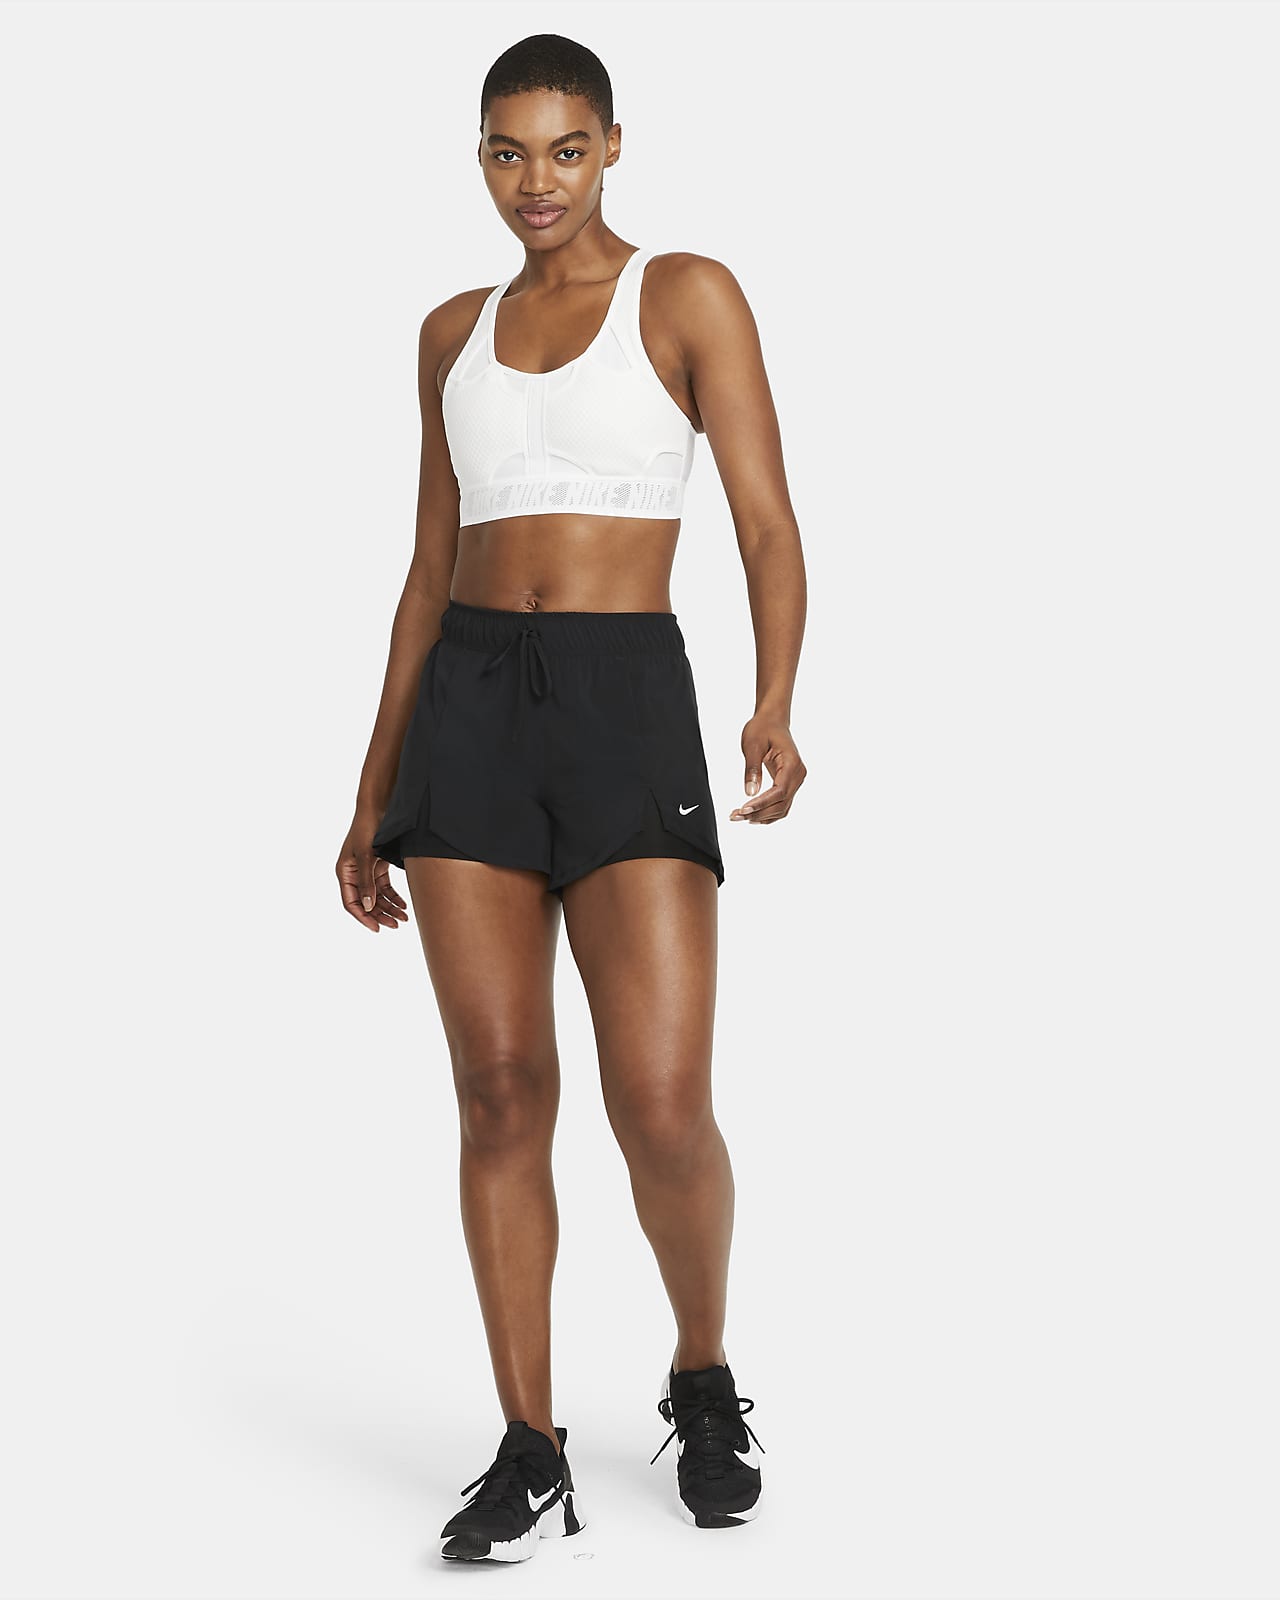 nike flex training shorts womens